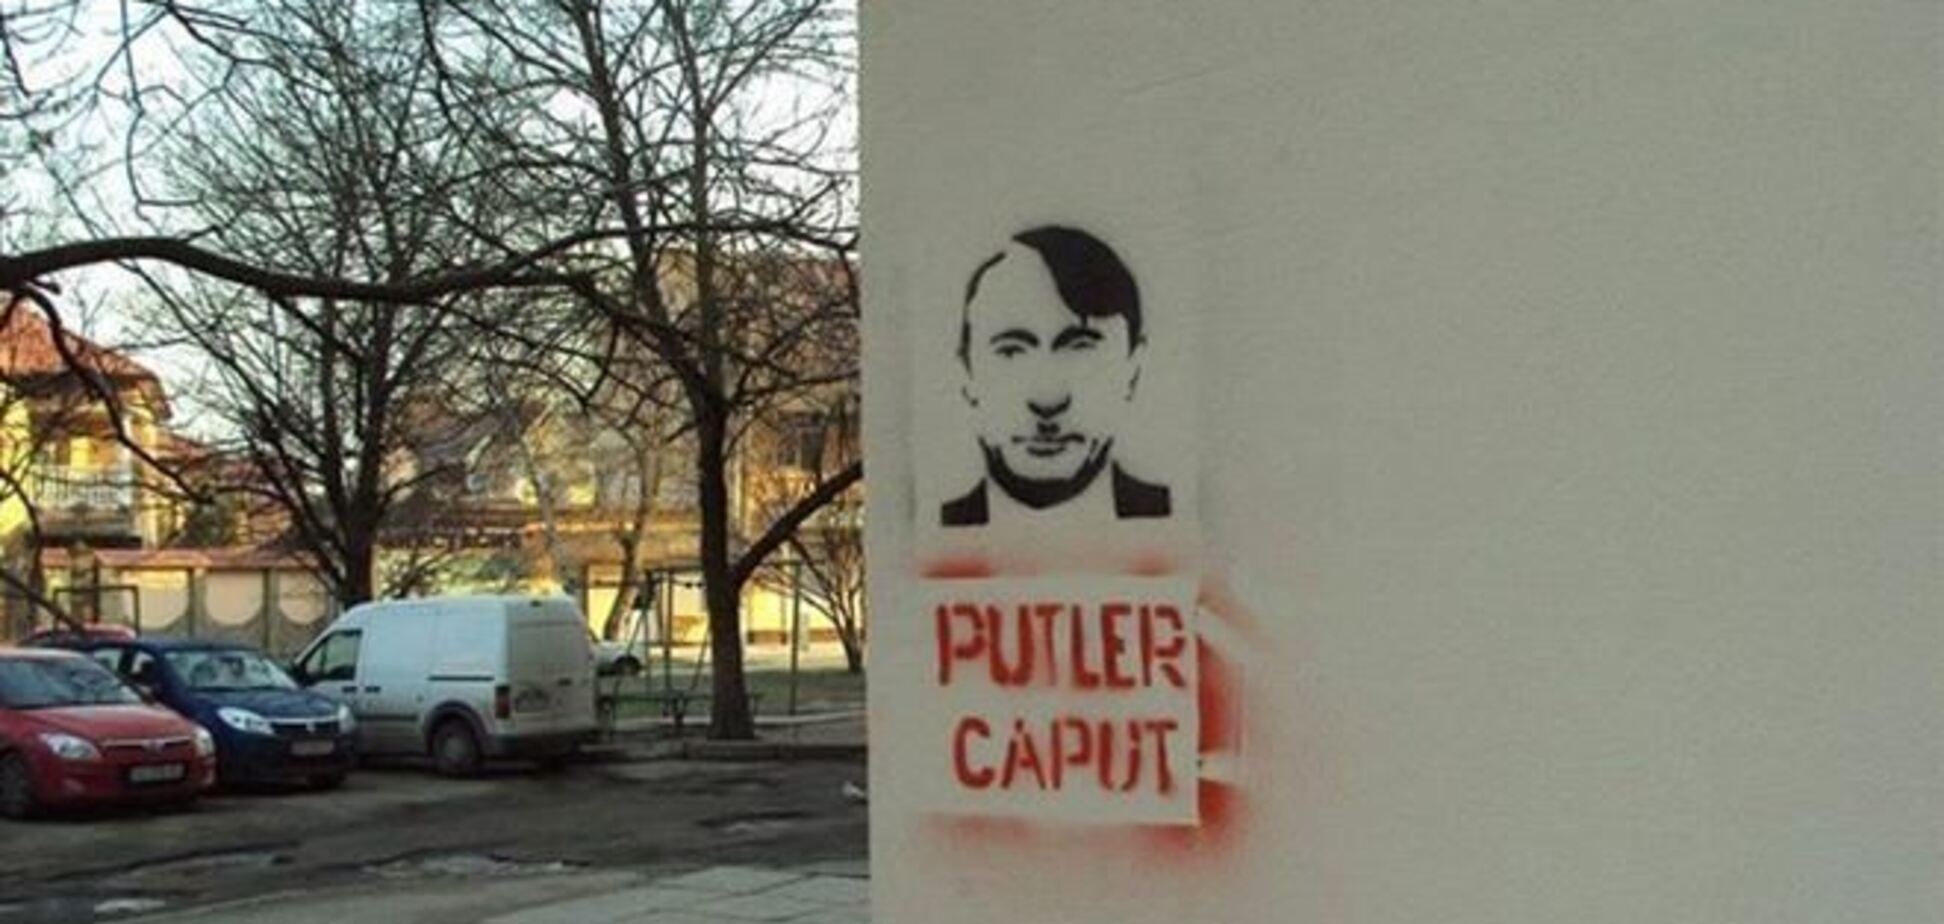 В Симферополе появились граффити с изображением Путина: 'Putler Caput'